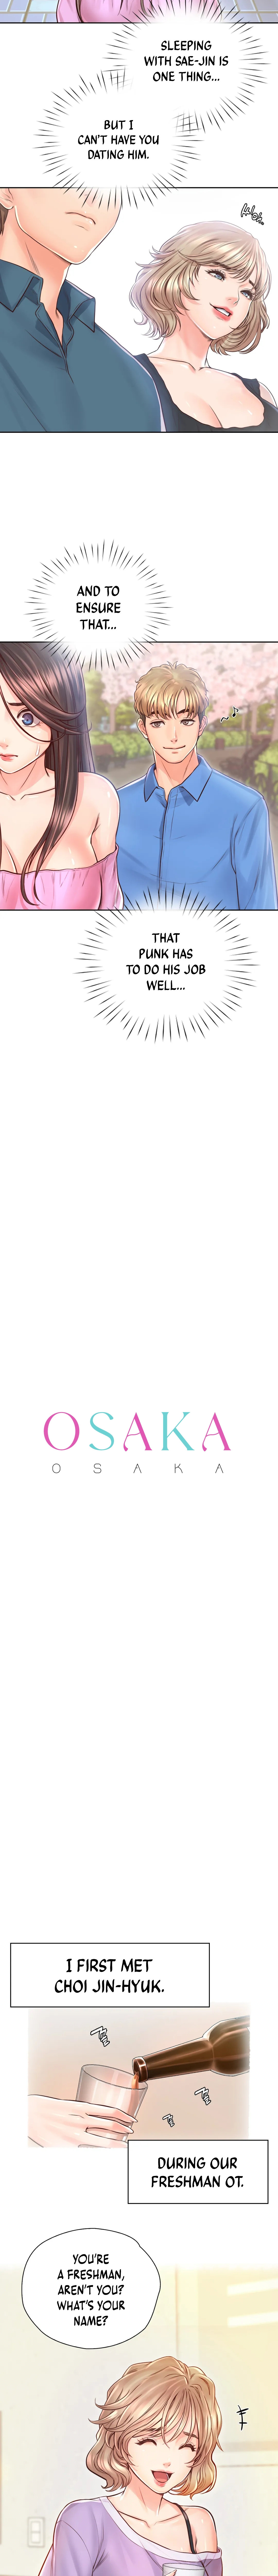 The image Osaka - Chapter 22 - 030e719828a7e31f24 - ManhwaManga.io